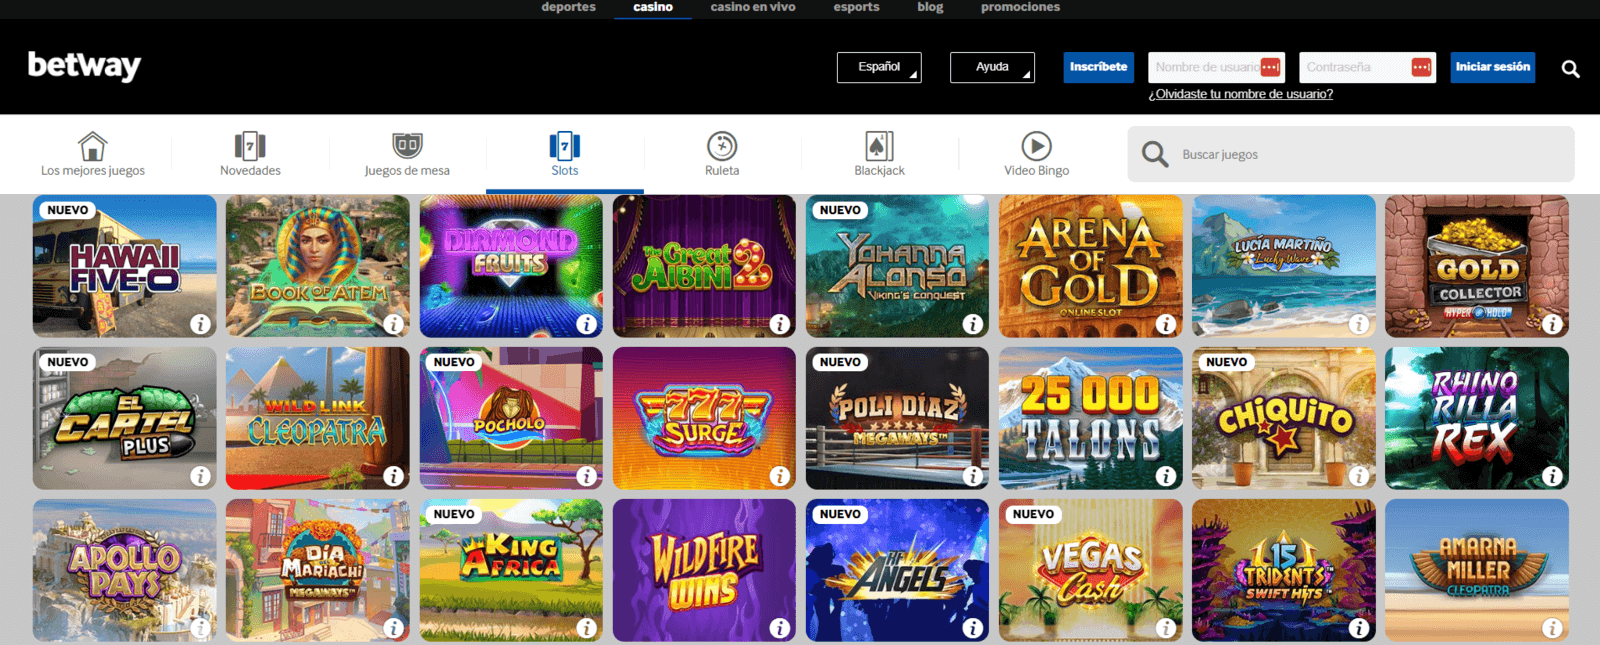 Betway Casino online que acepta Teleingreso en España